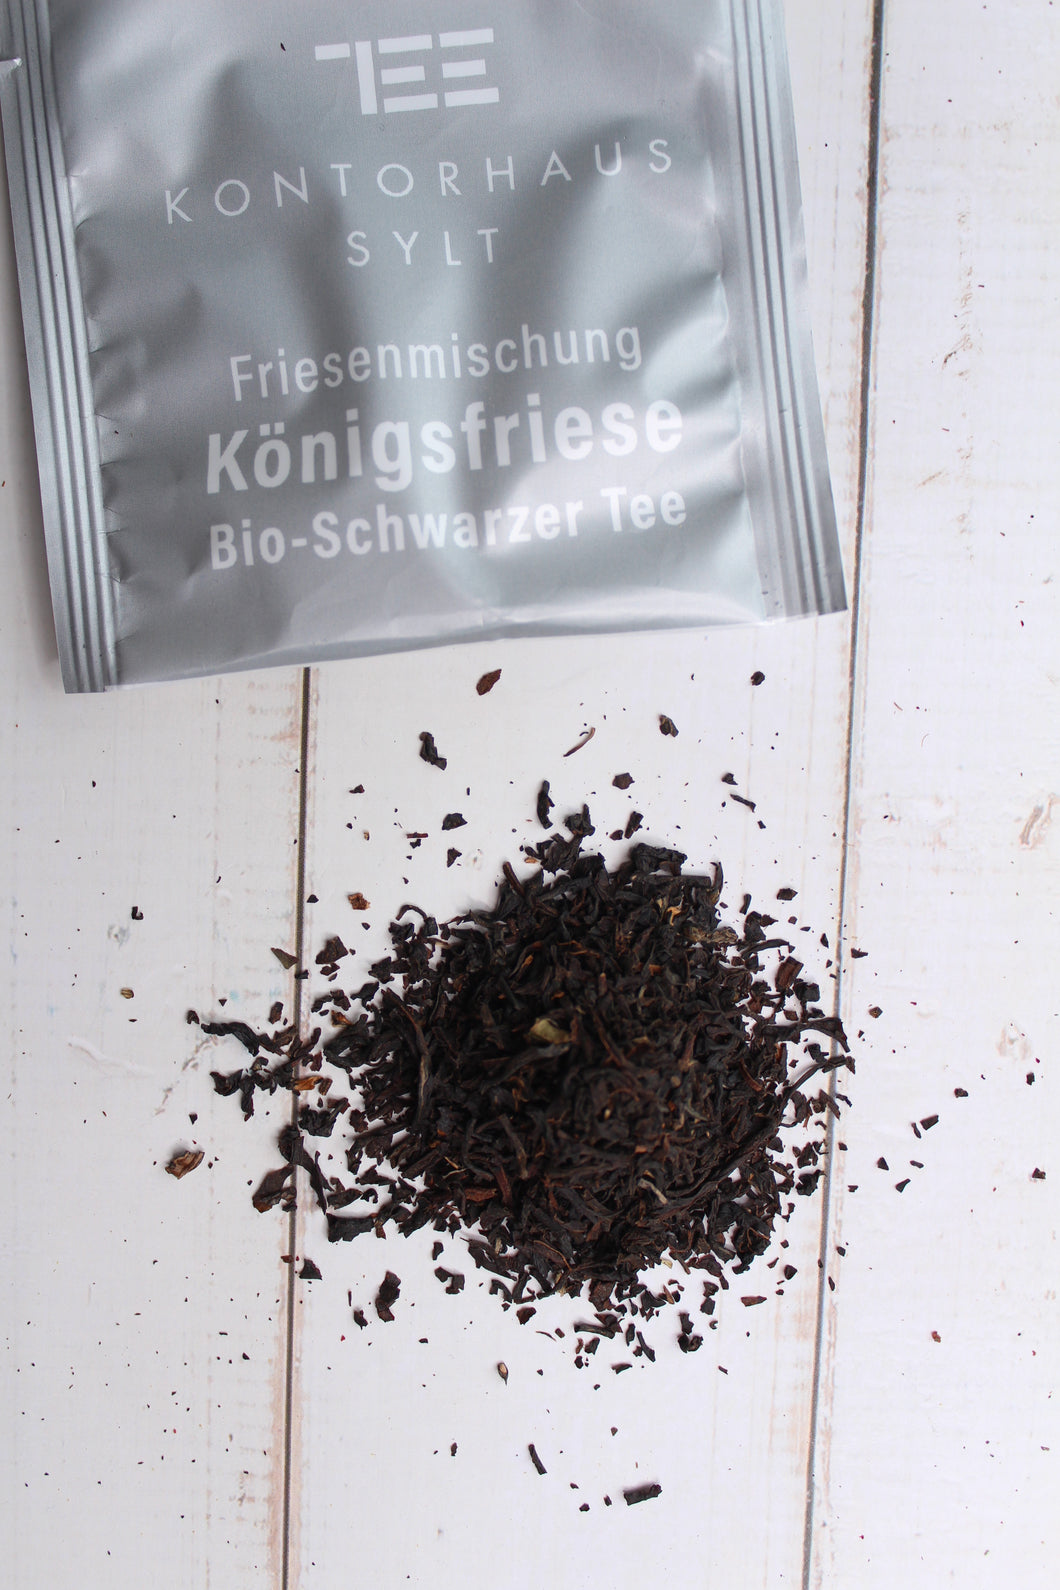 Friesenmischung No. 1 / Königsfriese Bio